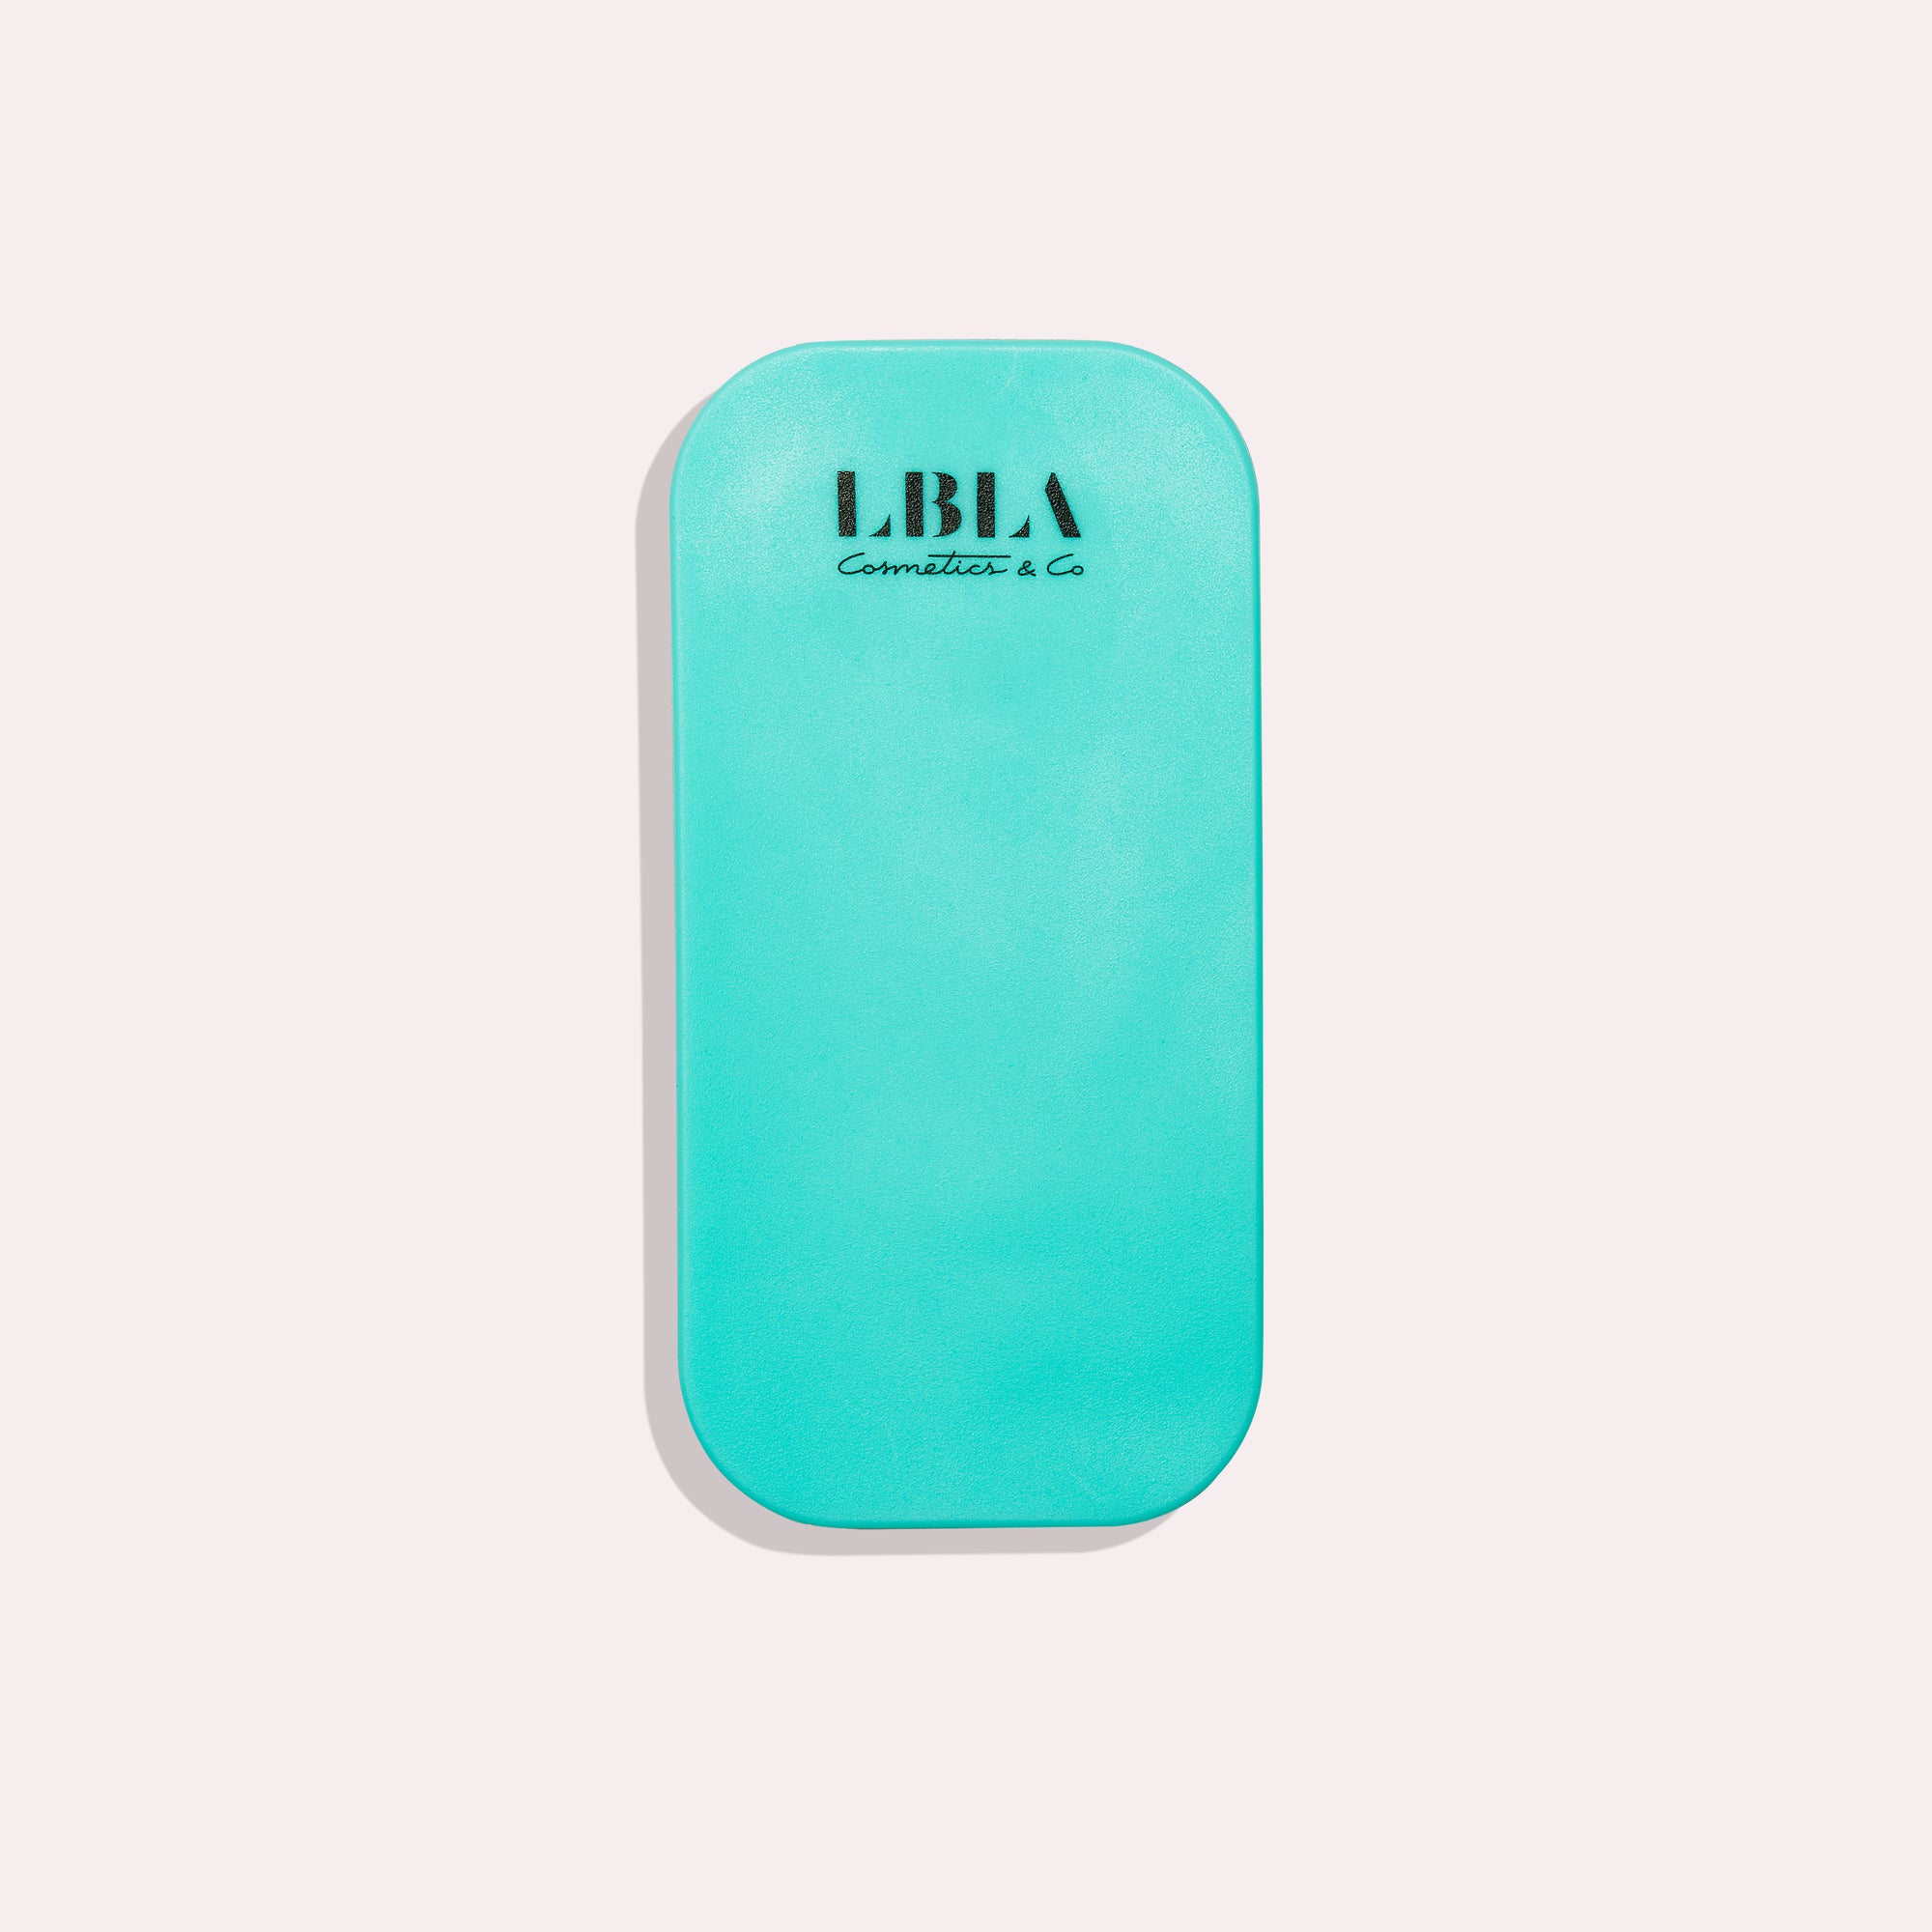 New Arrivals - LBLA Cosmetics & Co